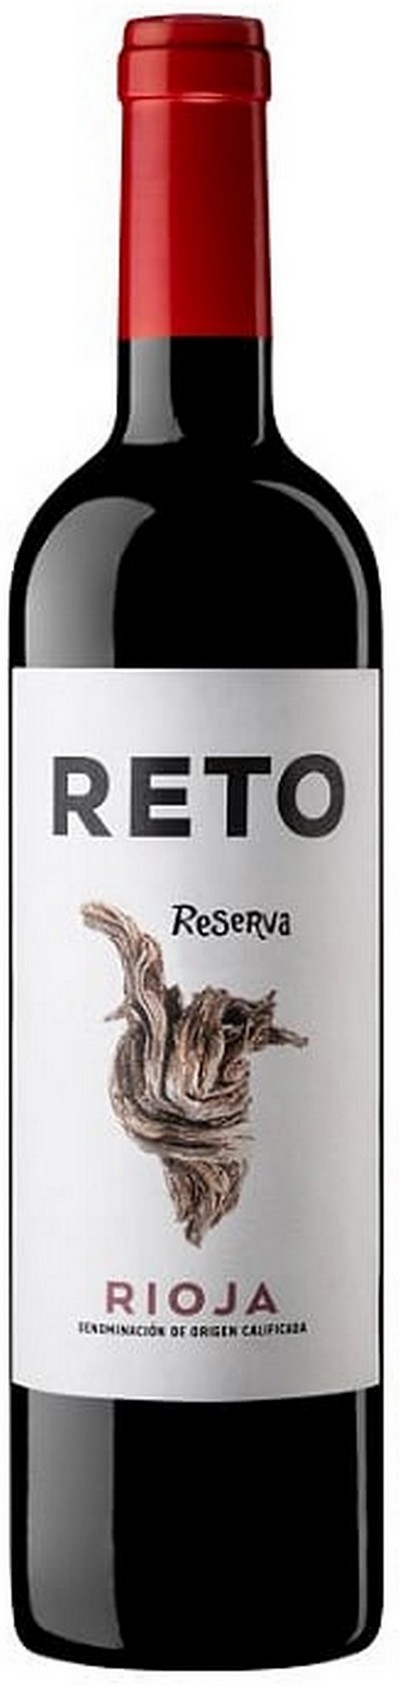 reto-reserva-2015